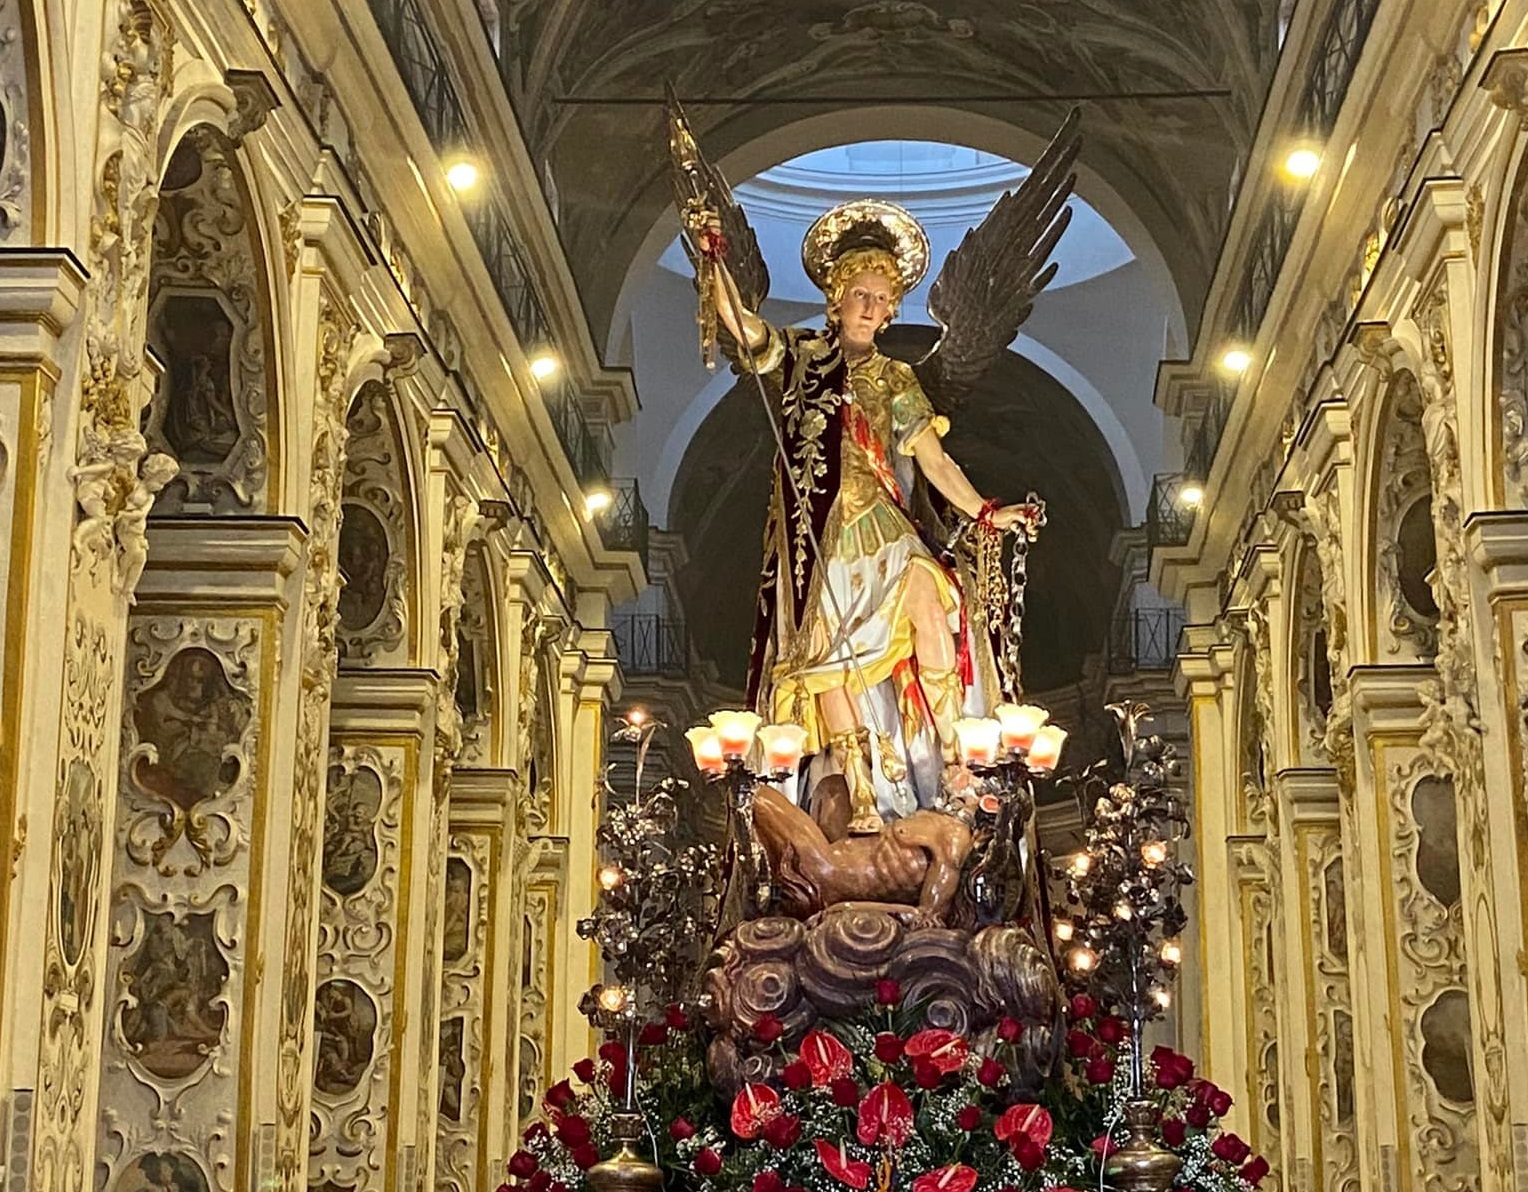 Caltanissetta nel 2025 celebra i 400 anni dall’apparizione di San Michele. Un cittadino: “Quando inizieranno i preparativi”?